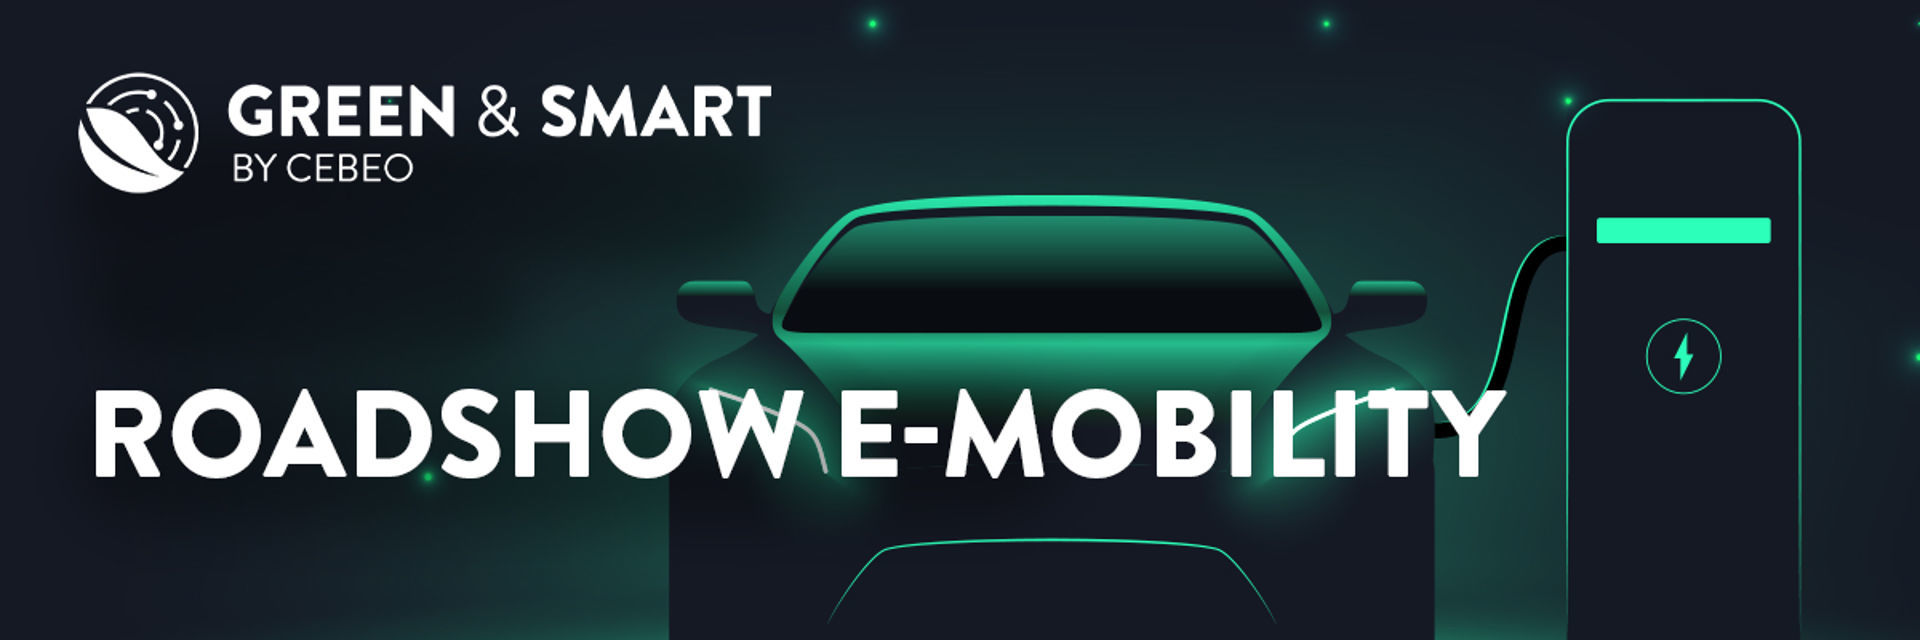 roadshows e-mobility